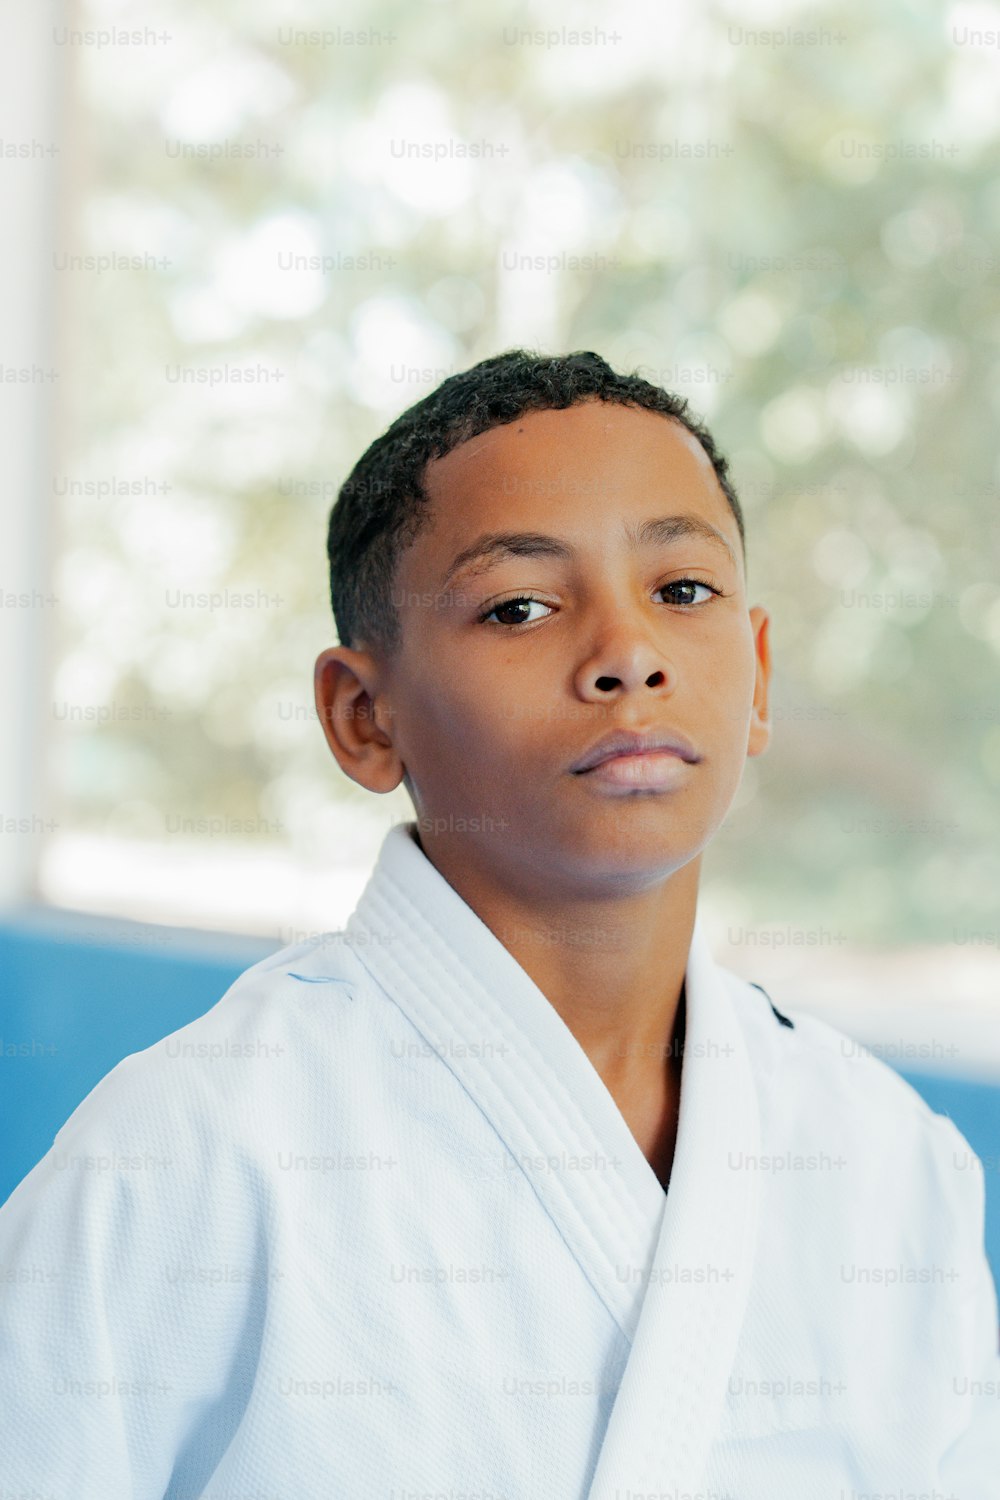 Ein kleiner Junge in einem weißen Karate-Outfit